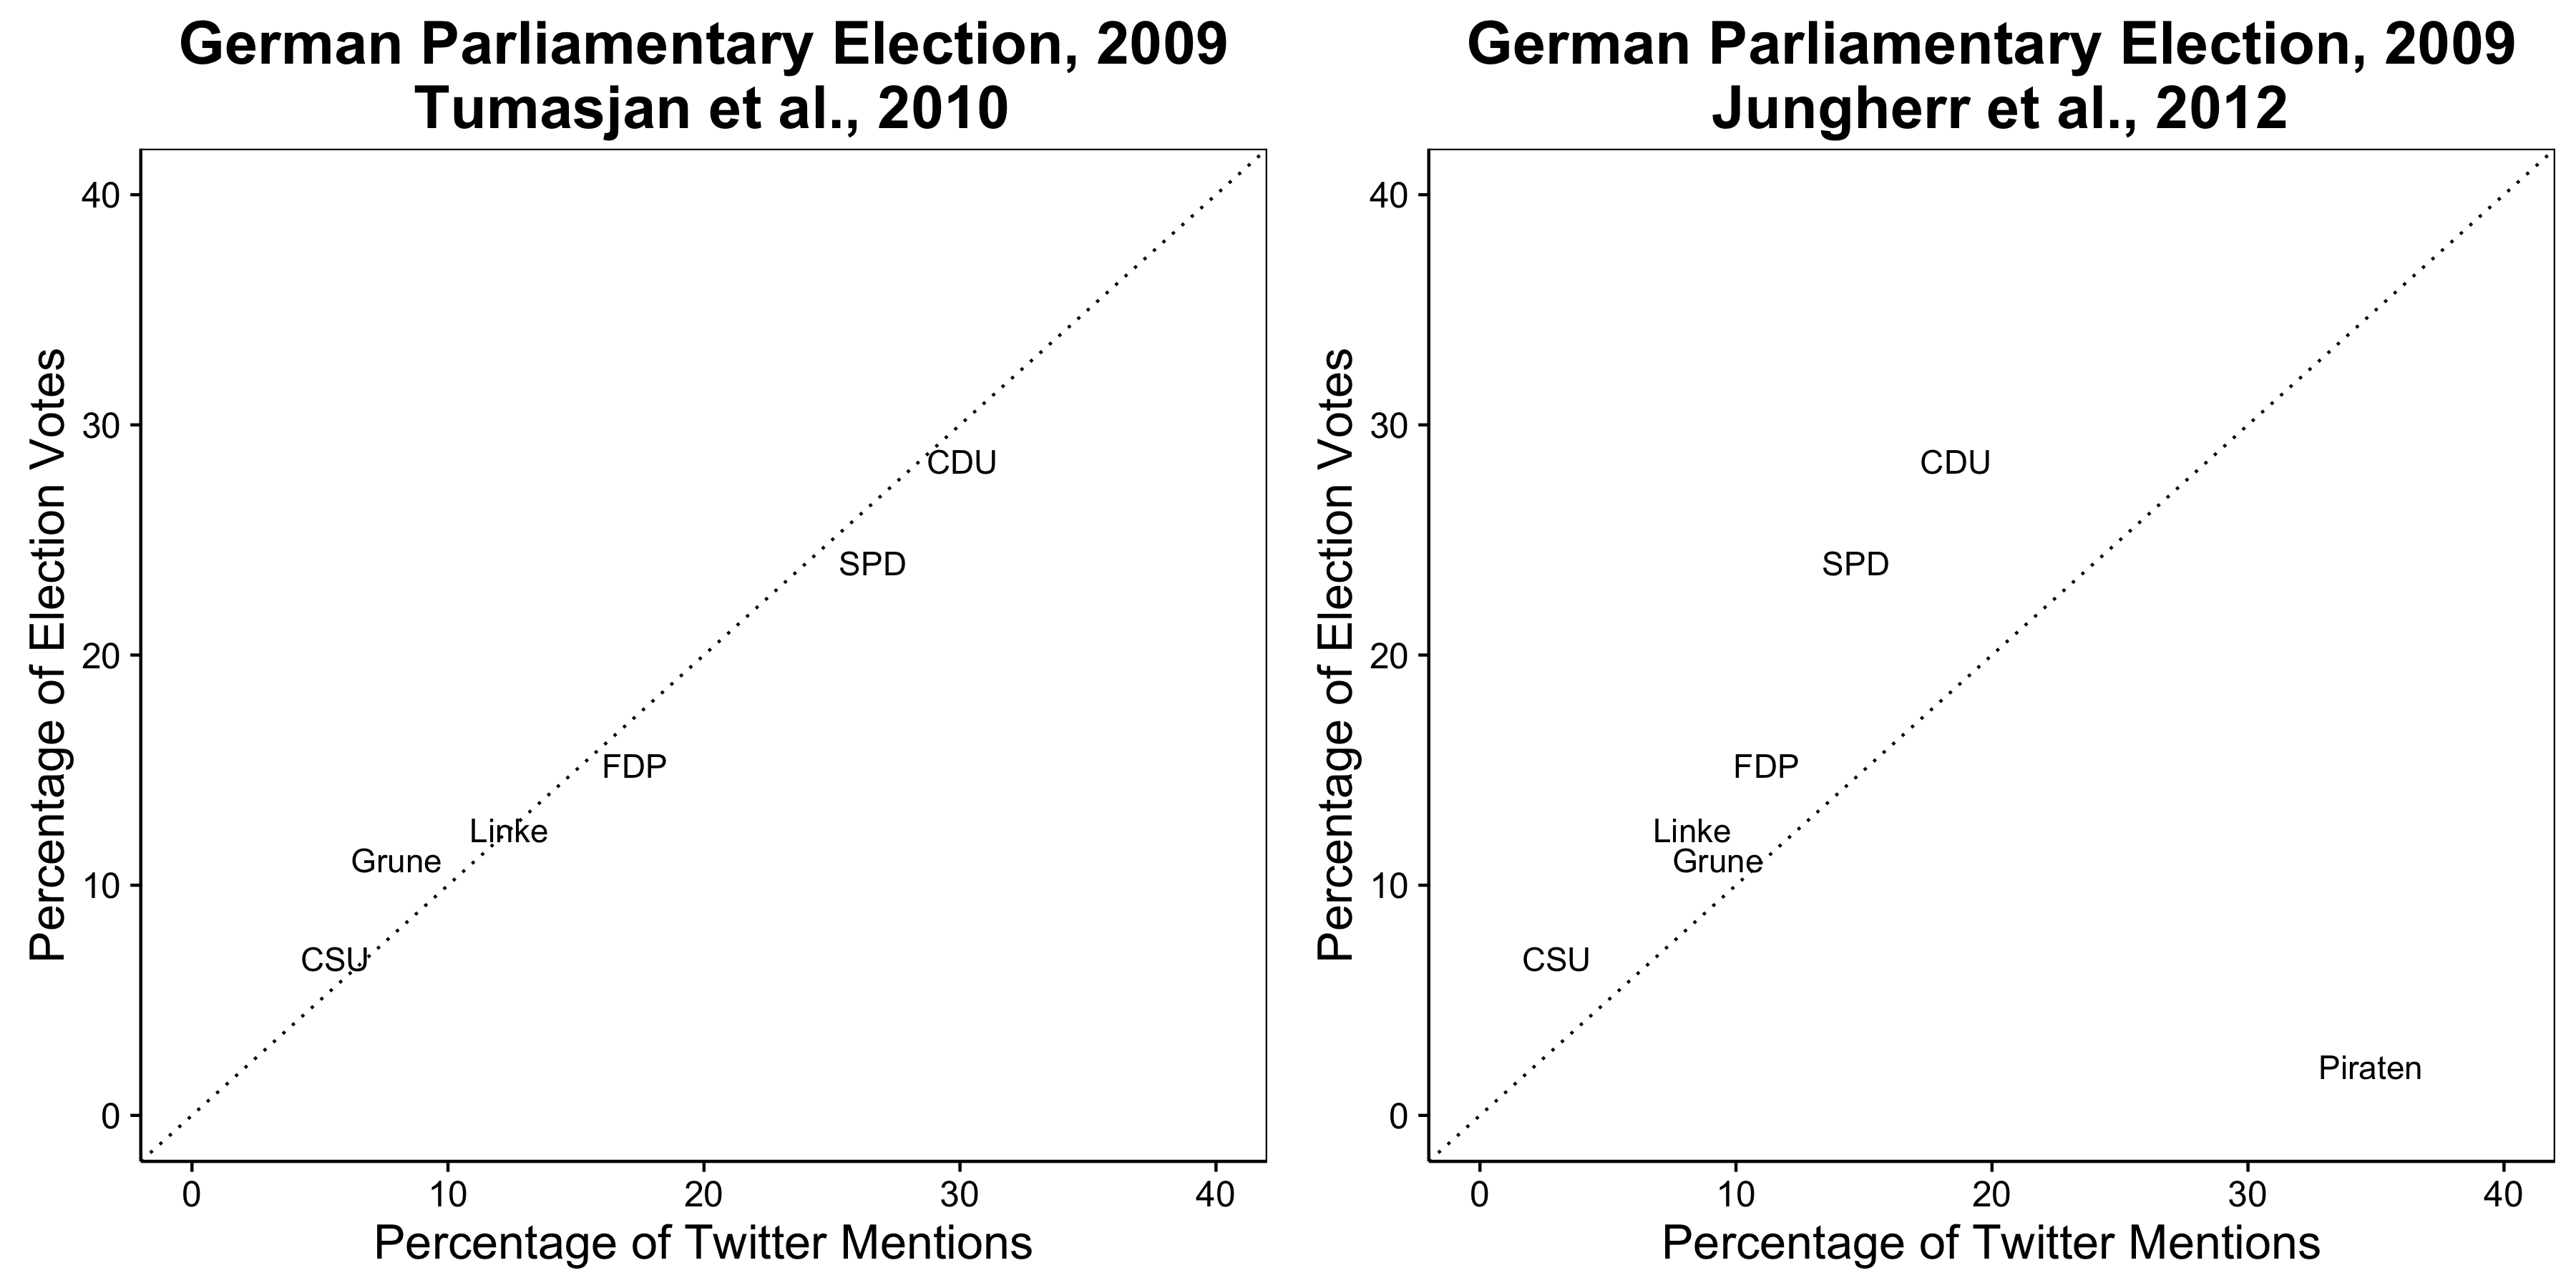 Figure 2.9: Twitter behsa xuya kir ku pêşbînî li encamên 2009 hilbijartinê German (Tumasjan et al 2010)., Di heman demê de ev encam derdikeve ku girêdayî li ser hin tercîhên keyfî û ne heq e (Jungherr, Jürgens, û Schoen 2012).